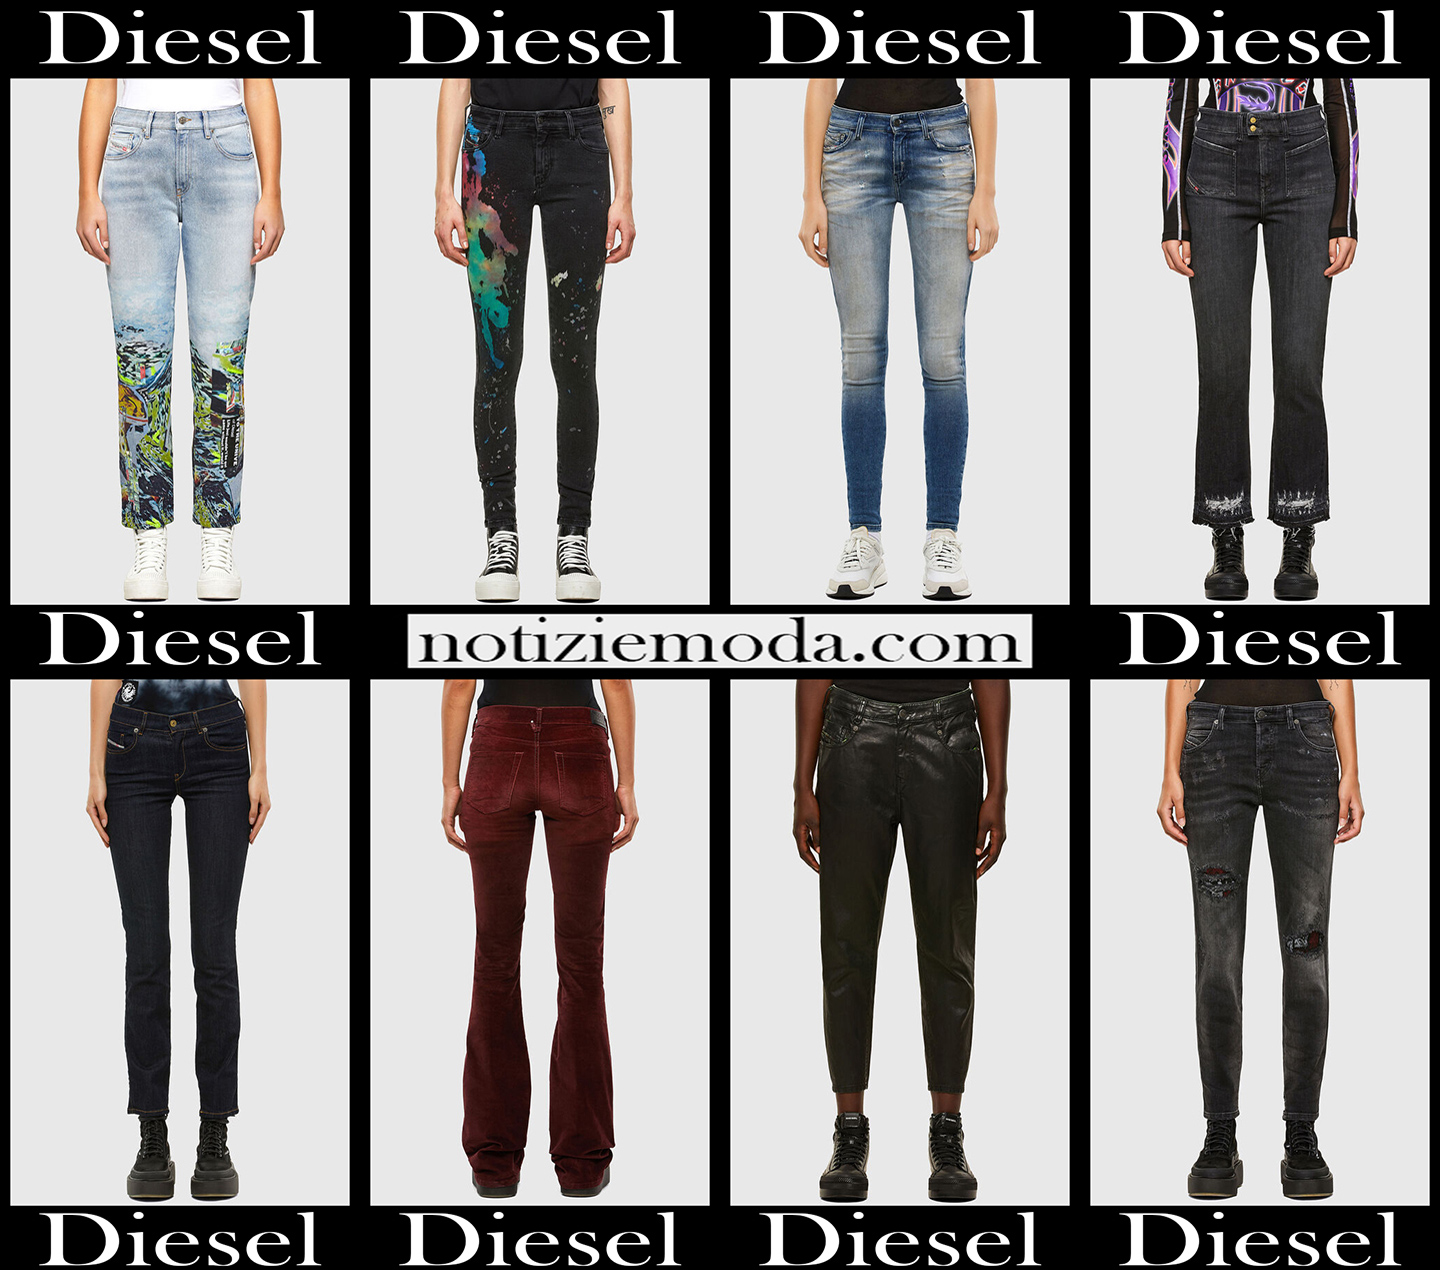 Nuovi arrivi jeans Diesel 2021 abbigliamento denim donna